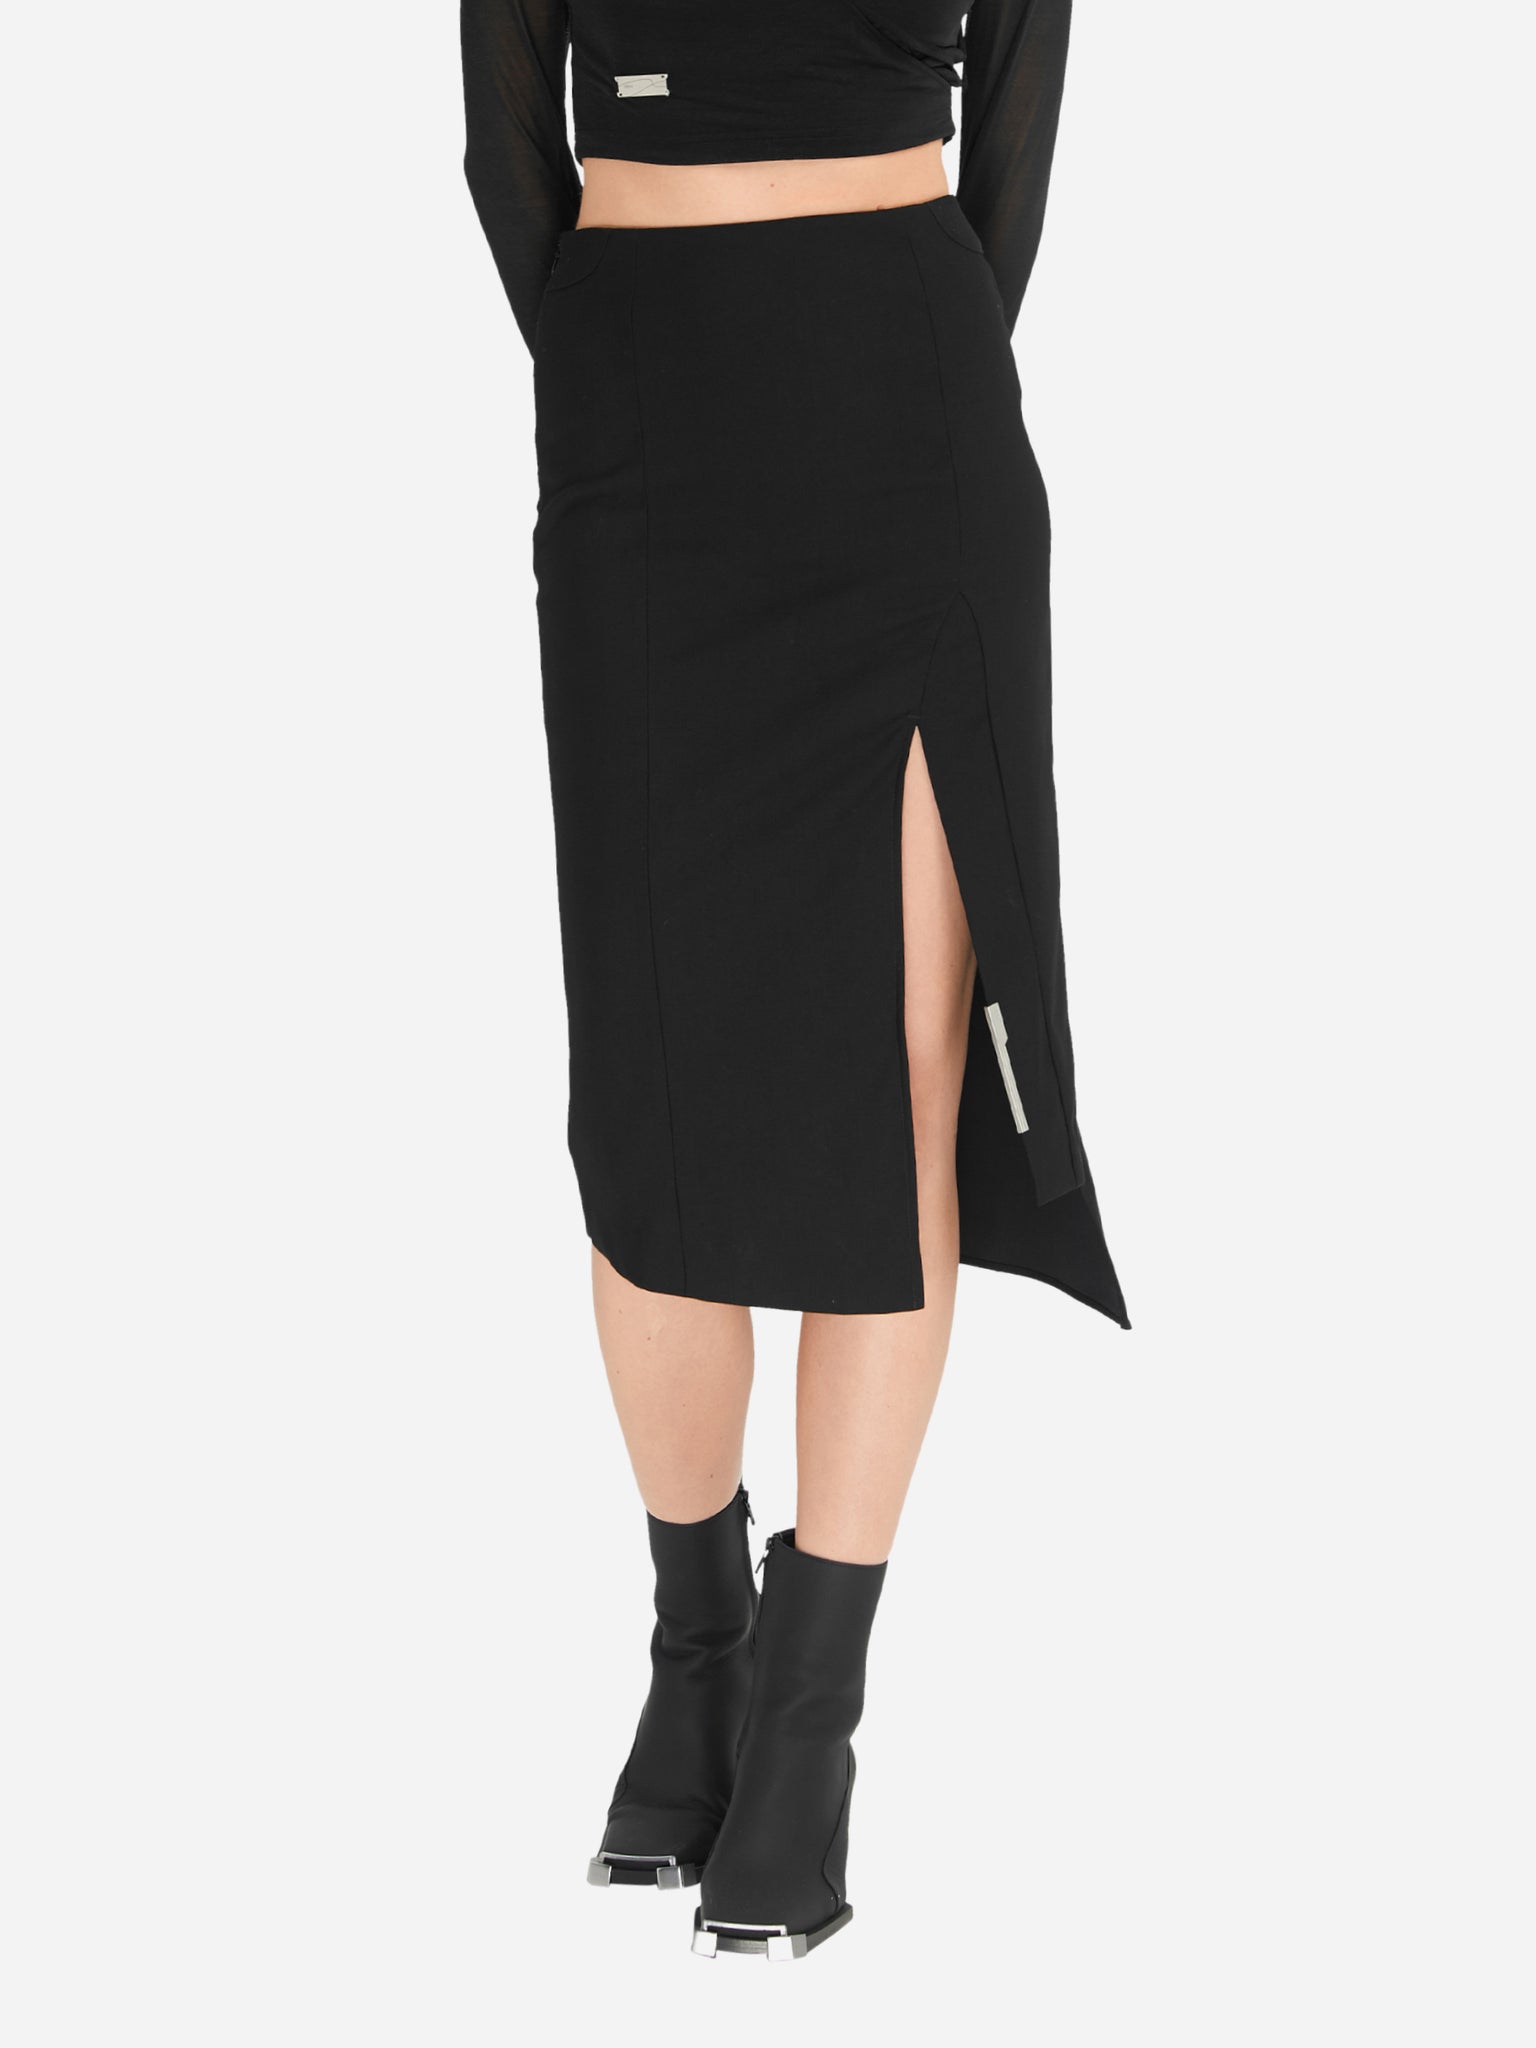 Seamless Molded Skirt - 1 Sided